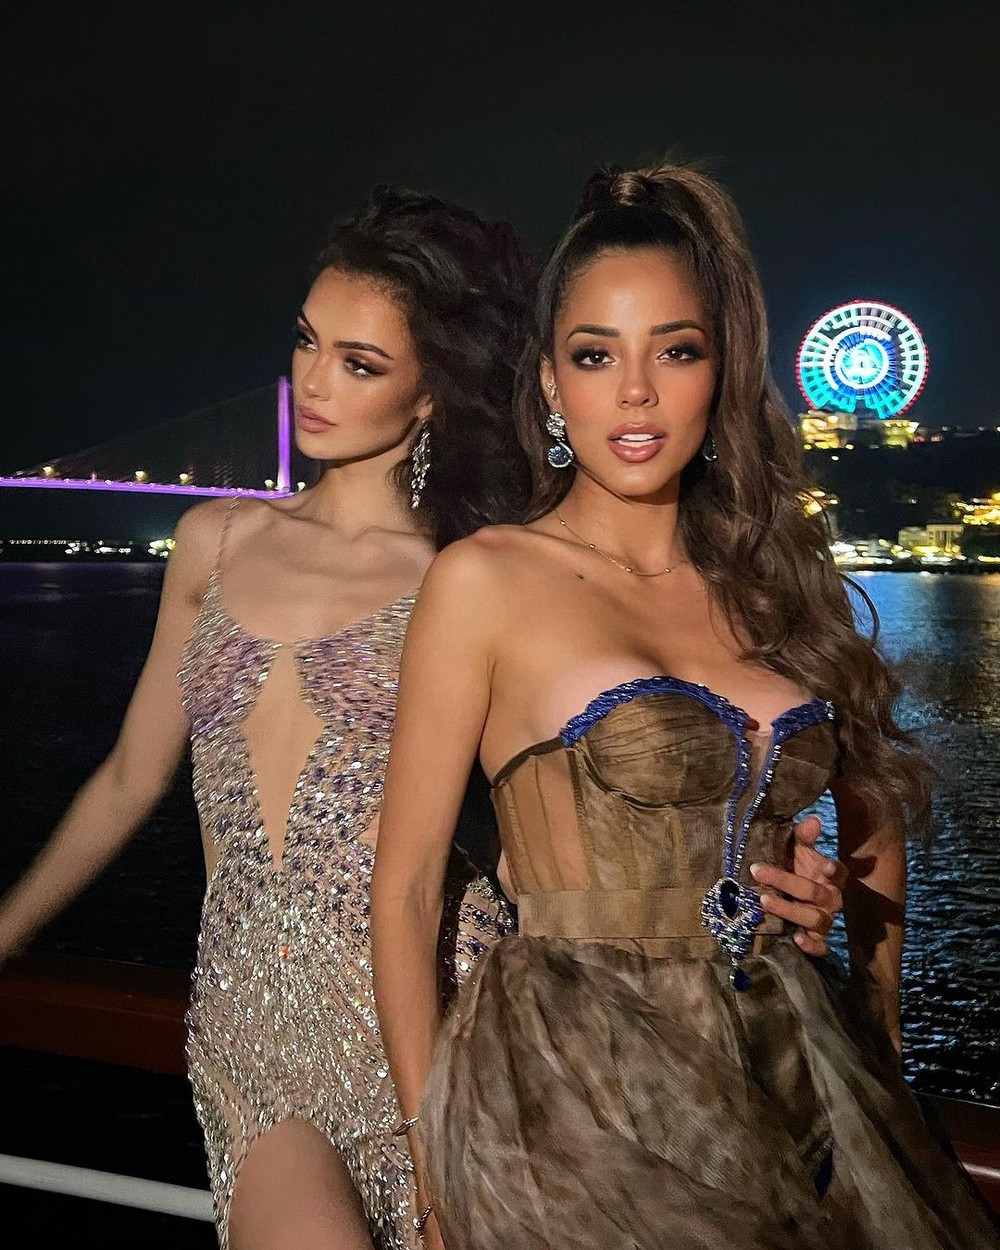 Nhan sắc người đẹp có 4,6 triệu lượt theo dõi đăng quang hoa hậu ở Việt Nam - Ảnh 15.